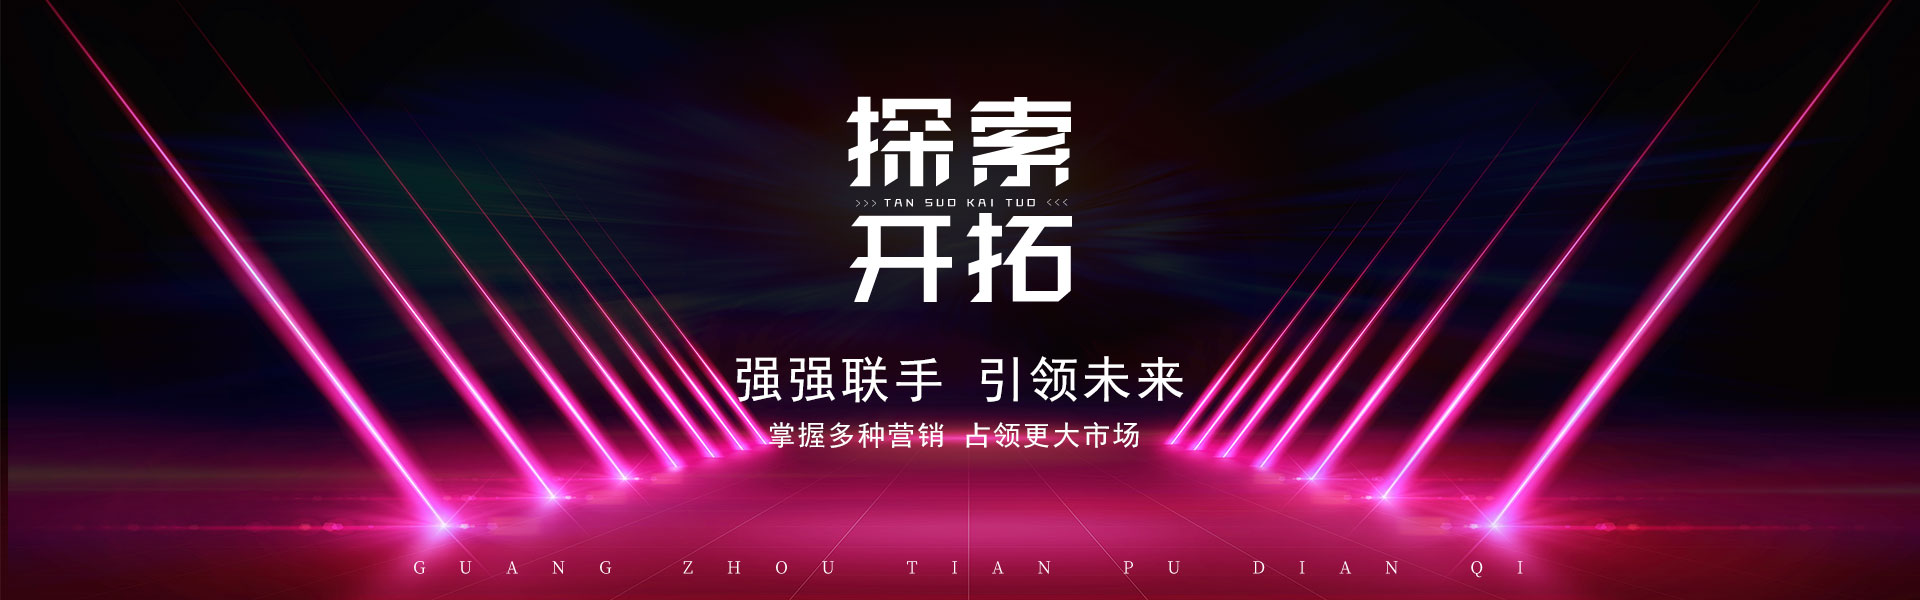 品牌终端_广州市天谱电器有限公司万利达品牌网站